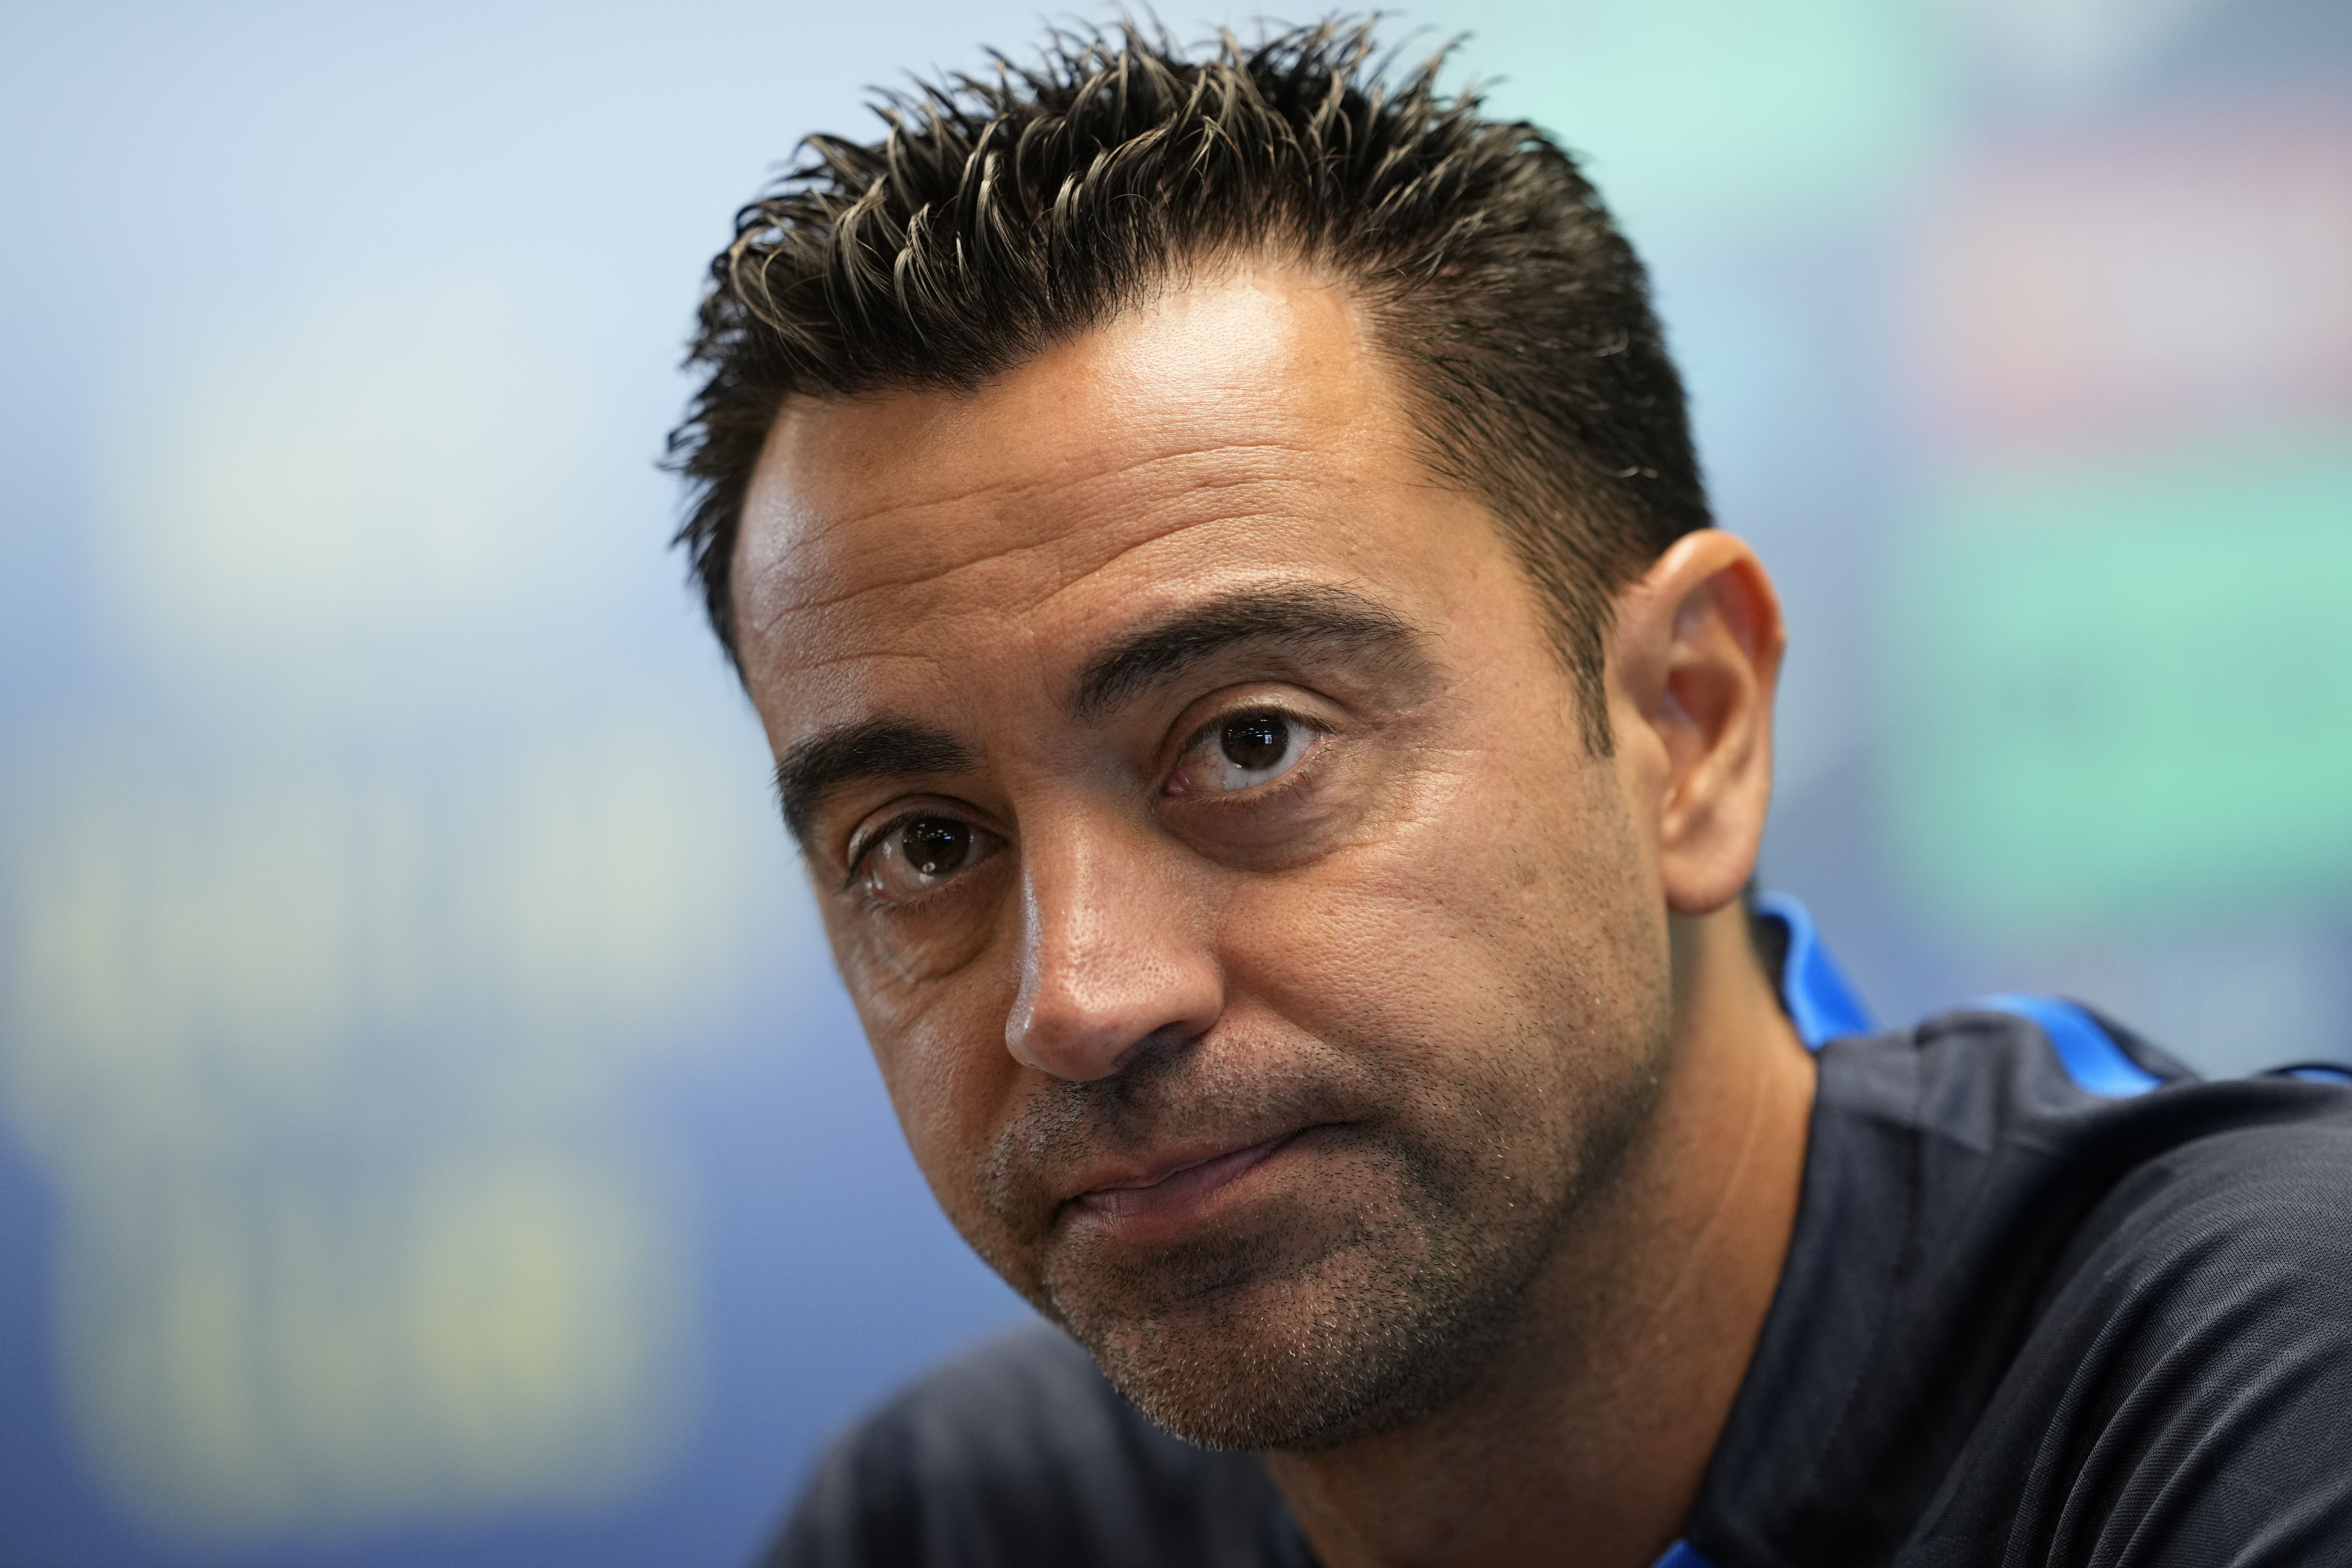 El trabajo de Xavi, como entrenador del Barcelona, está siendo muy cuestionado en los últimos días. (Foto Prensa Libre: EFE)